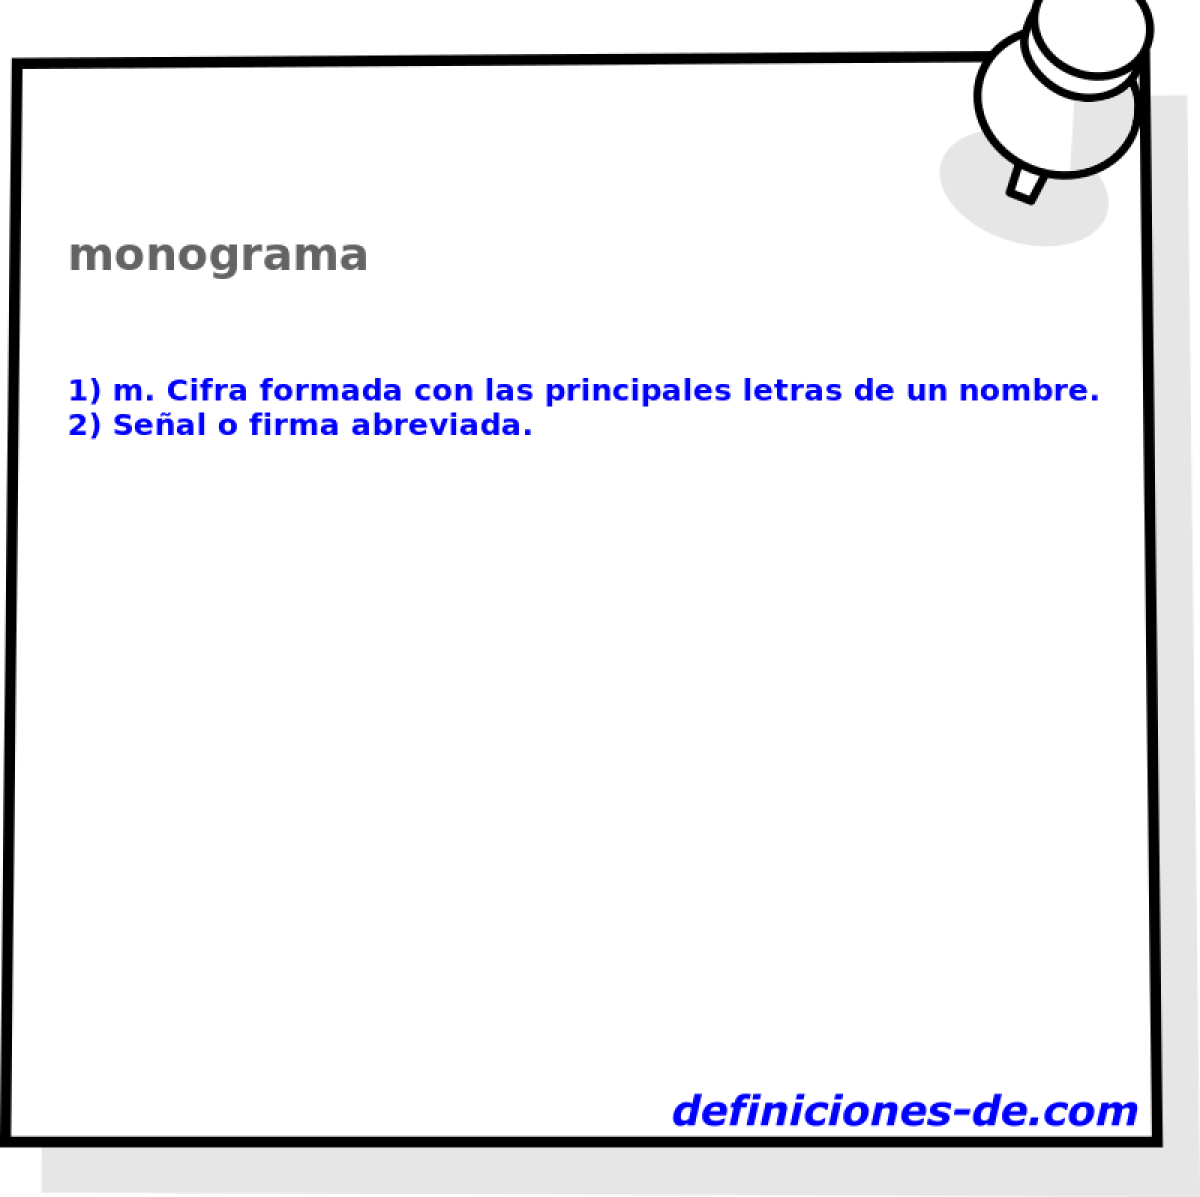 monograma 